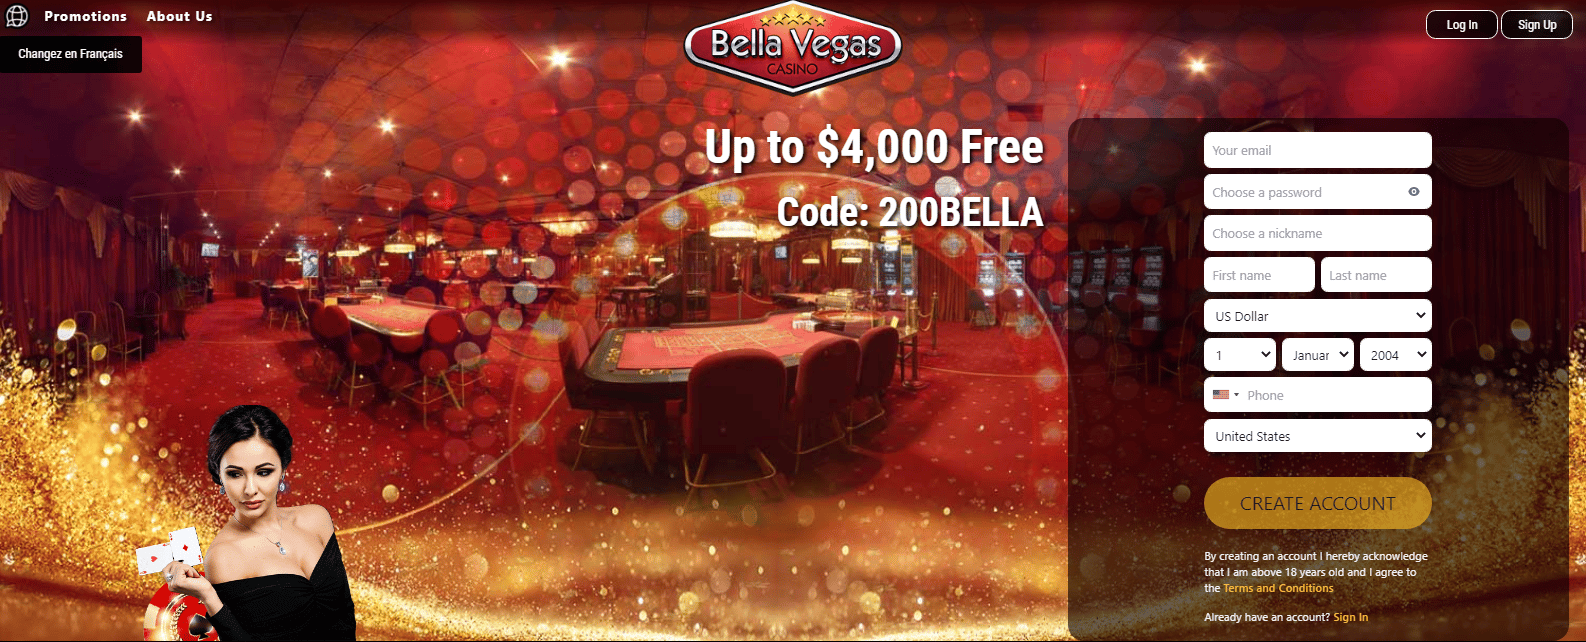 Bella Vegas Casino User Interface